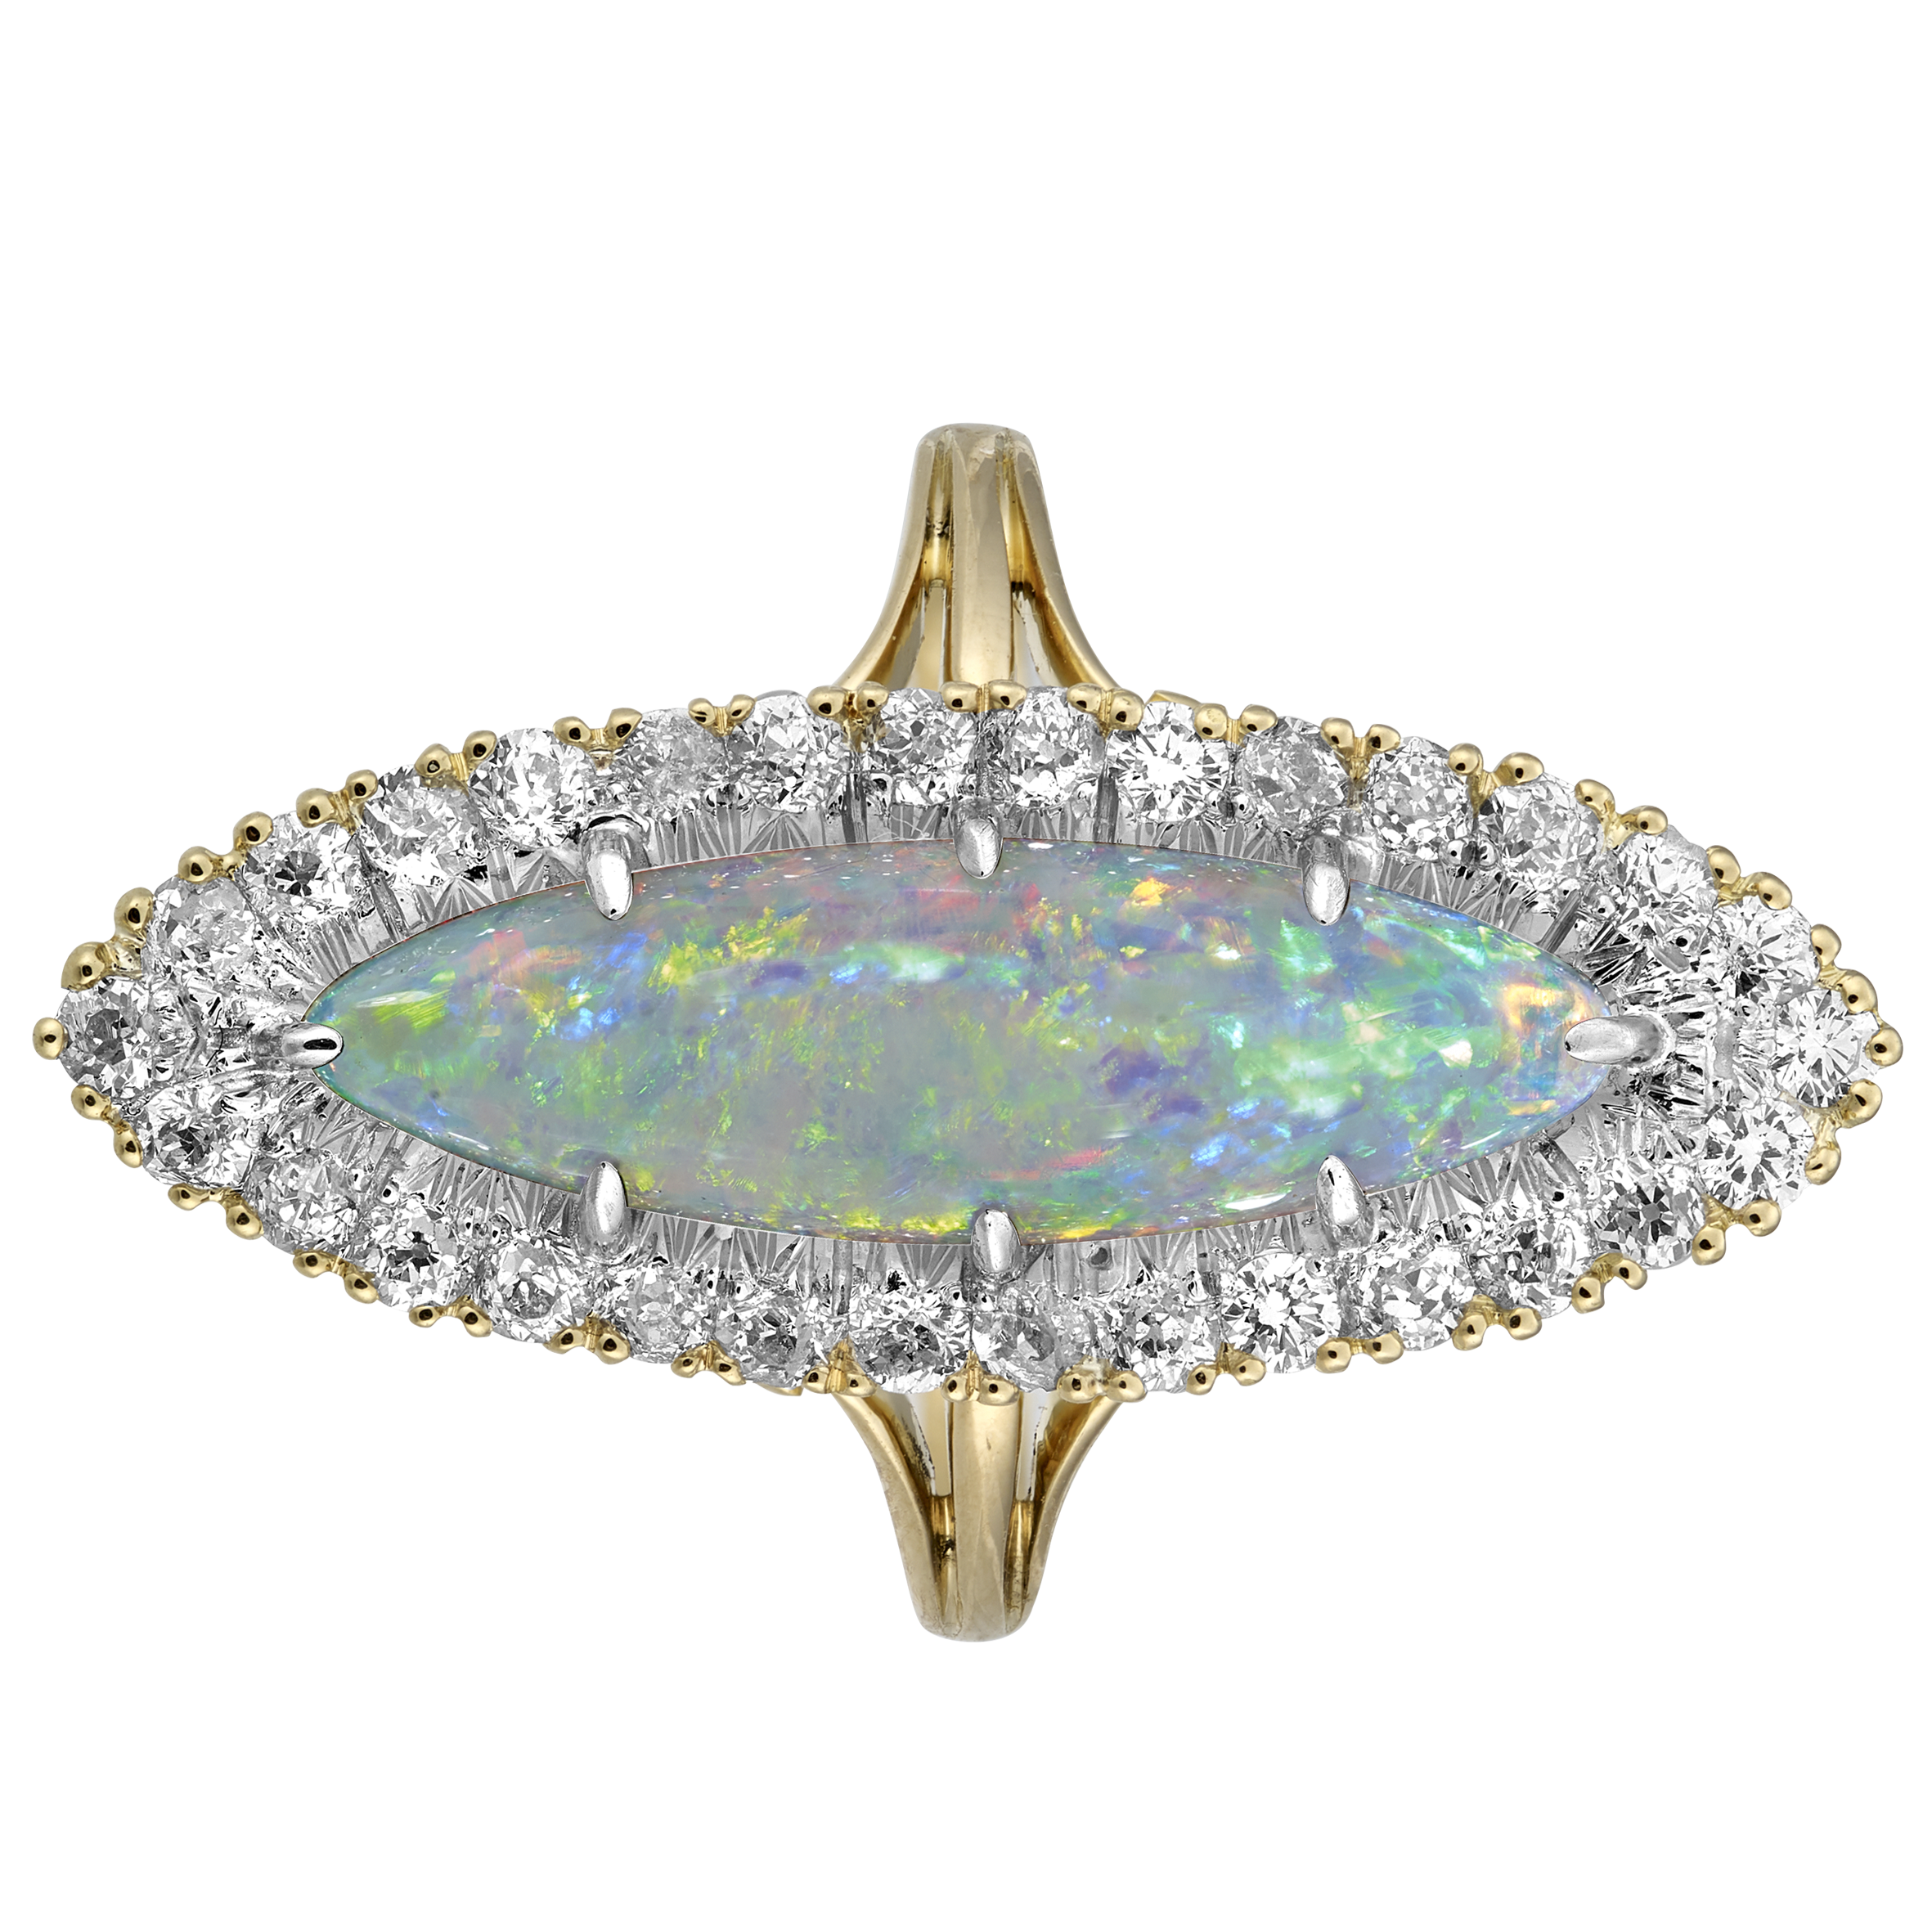 Marquise opale et diamants fin XIXe Gerphagnon